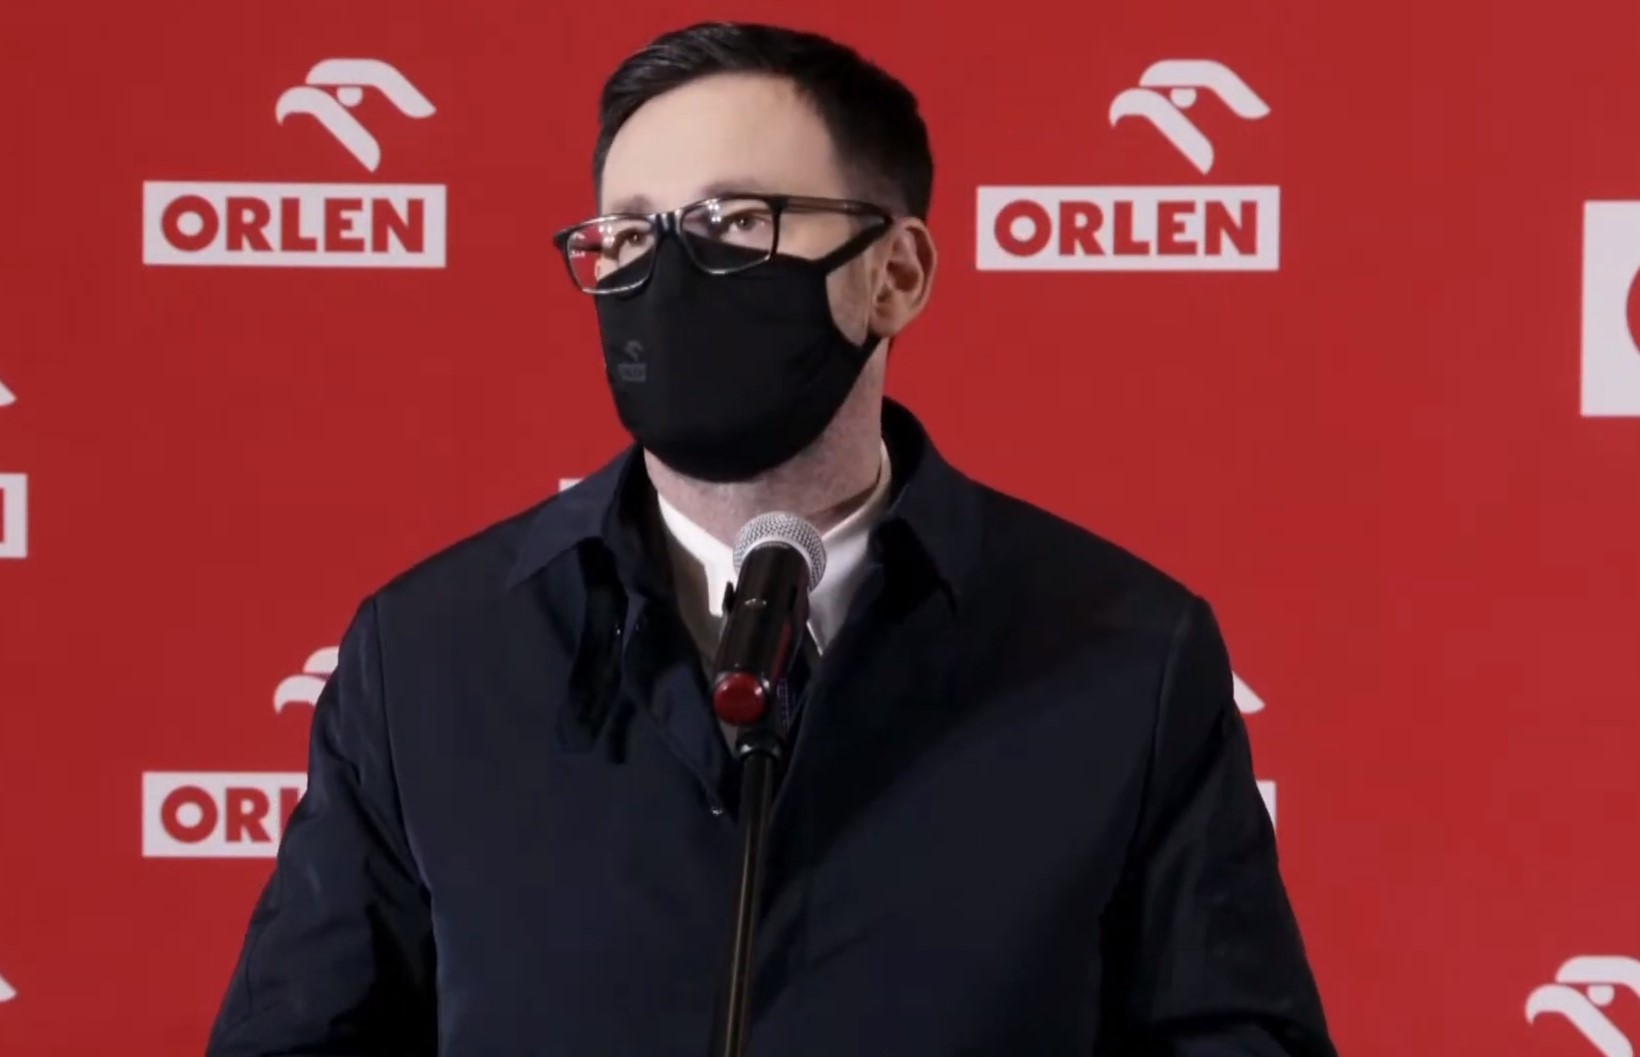 Mimo pandemii Grupa Orlen realizuje inwestycje zgodnie z planem - mówił Daniel Obajtek.